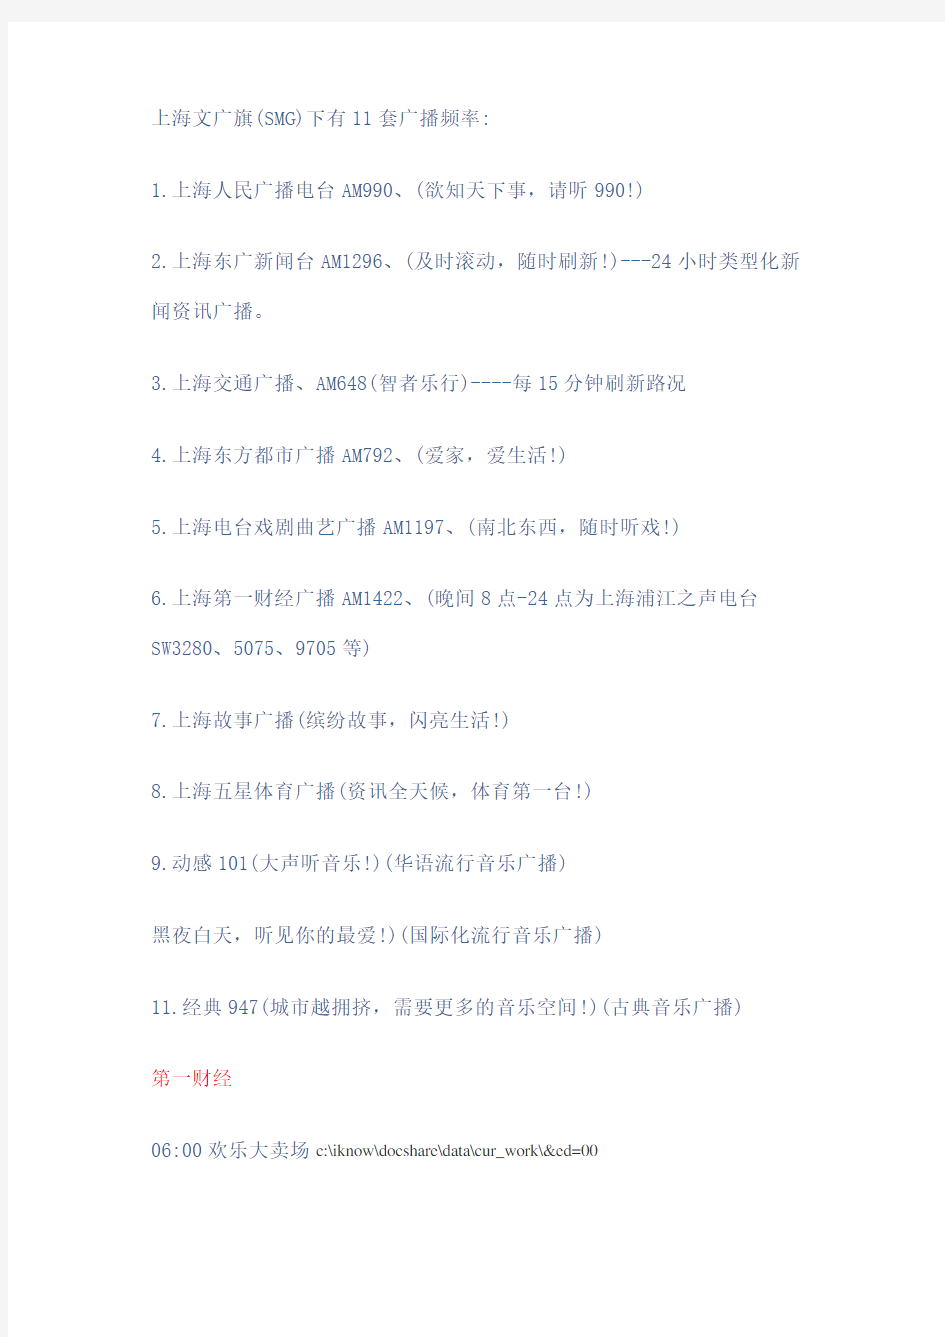 上海广播电台套广播频道以及各个频道的节目时间表